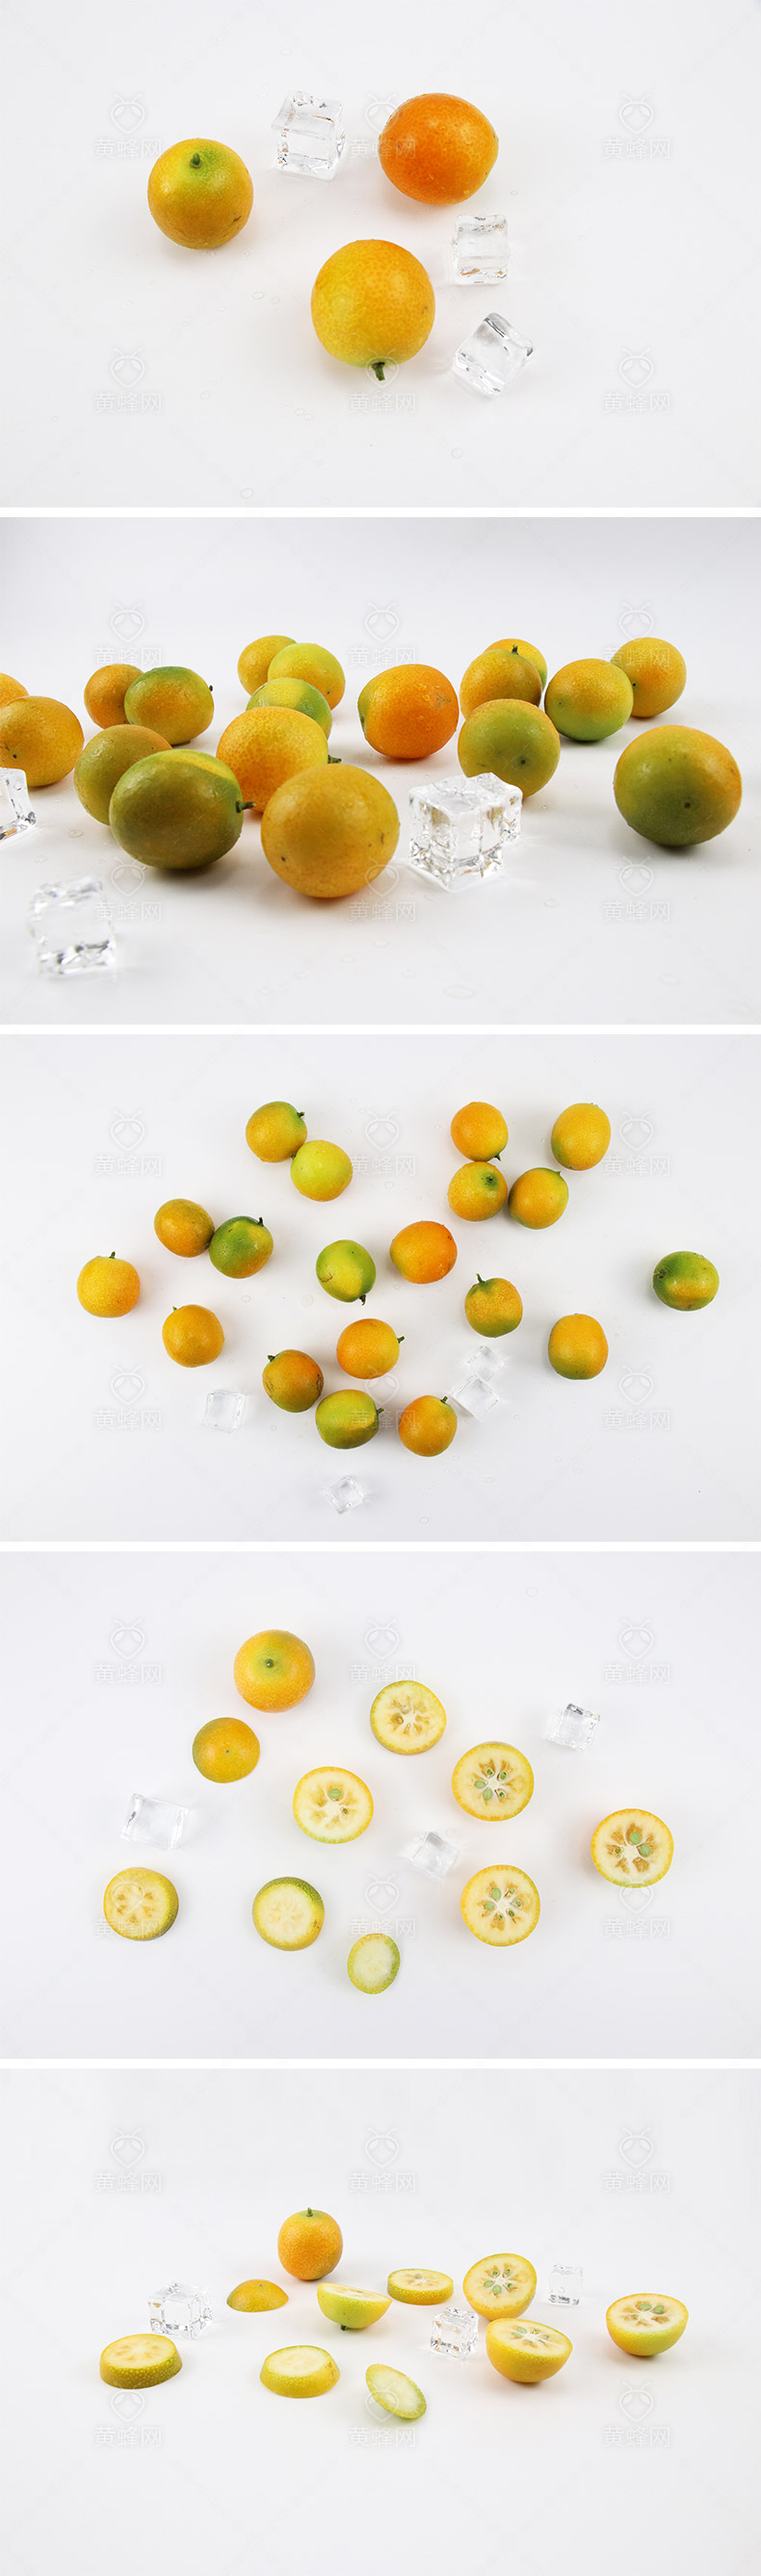 小金橘,水果,